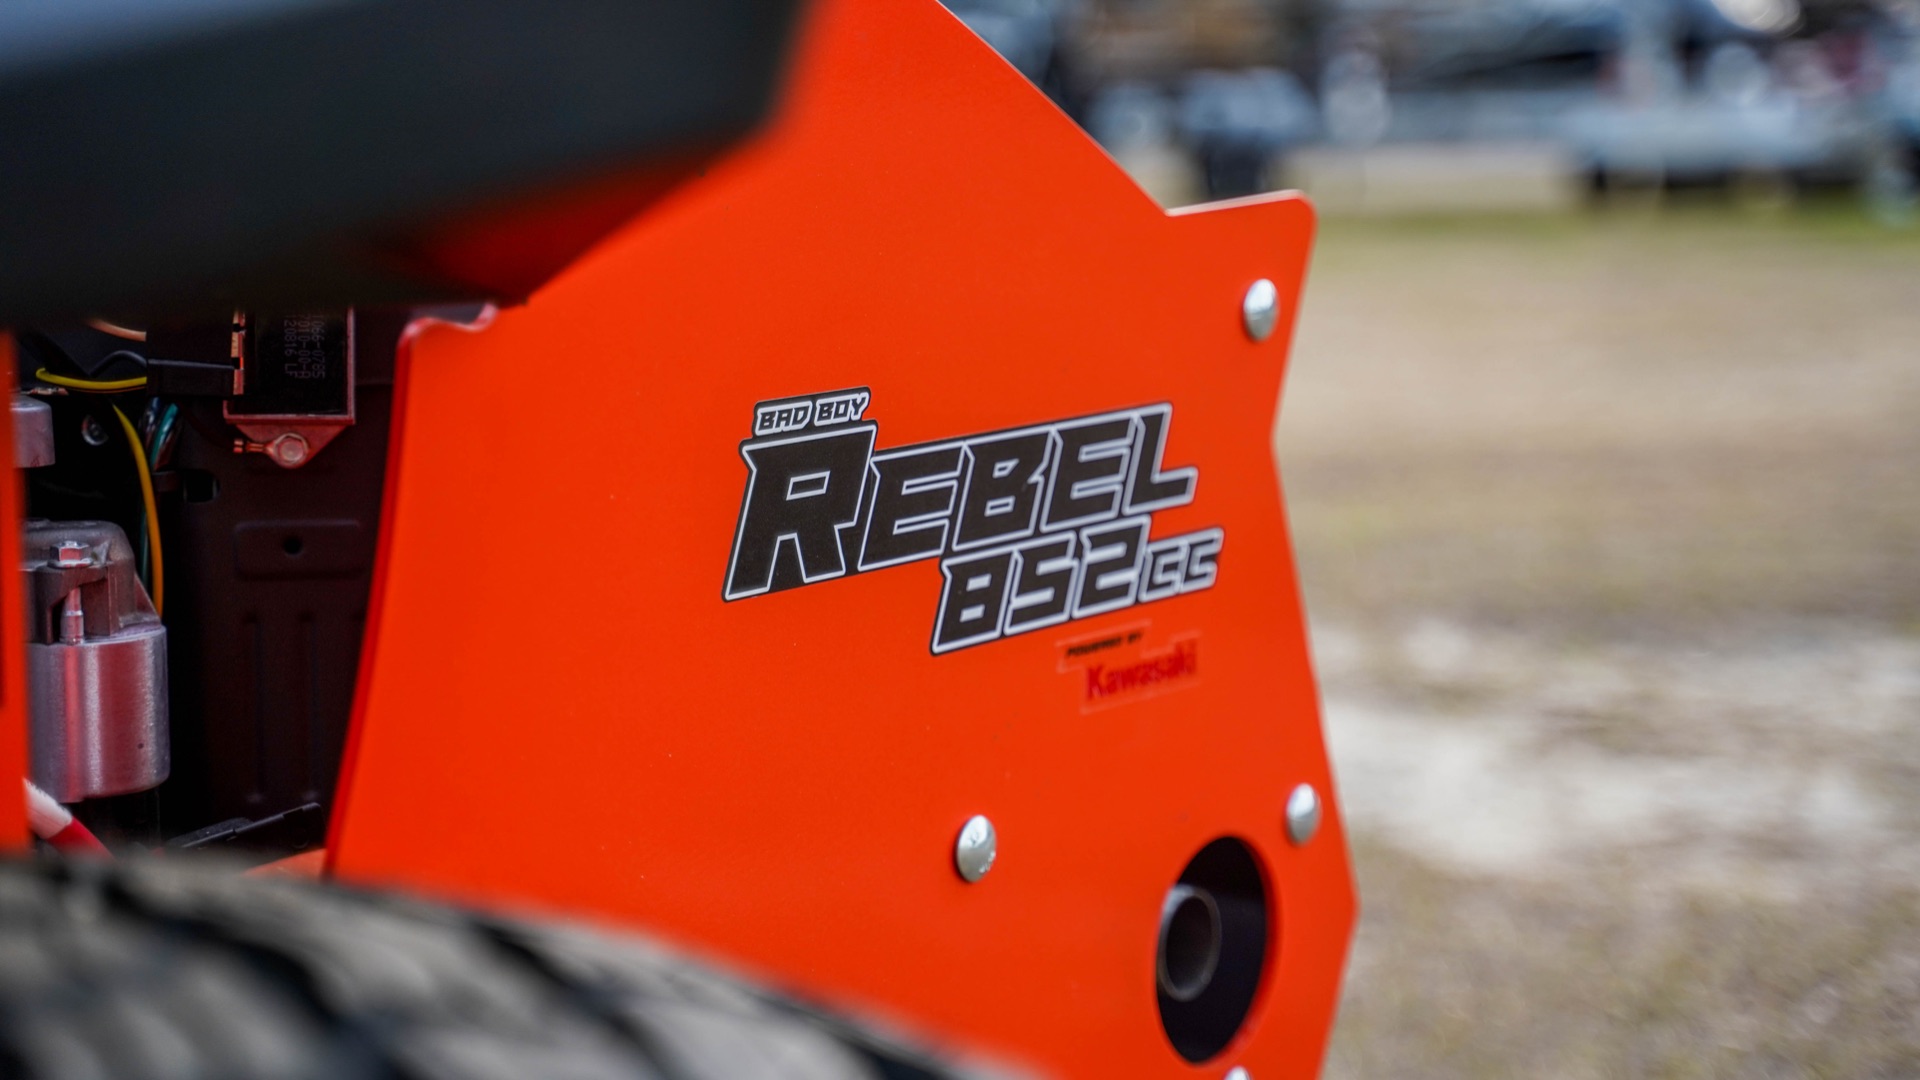 2022 Bad Boy Mowers Rebel 54 in. Kawasaki FX850 27 hp in Statesboro, Georgia - Photo 3